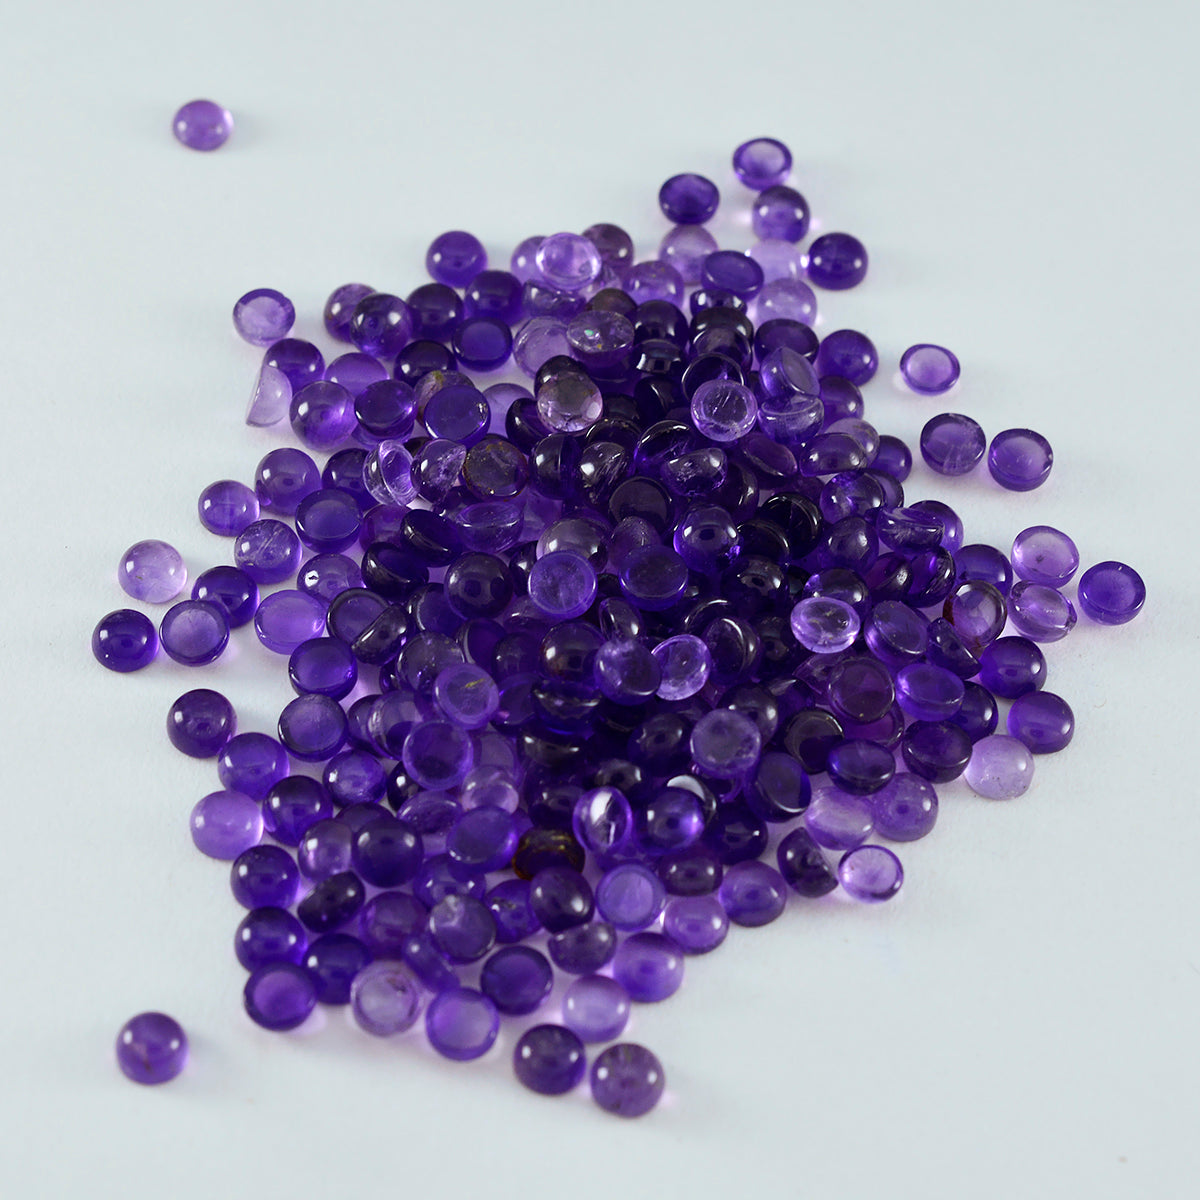 Riyogems 1 pieza cabujón de amatista púrpura 4x4mm forma redonda gema suelta de excelente calidad